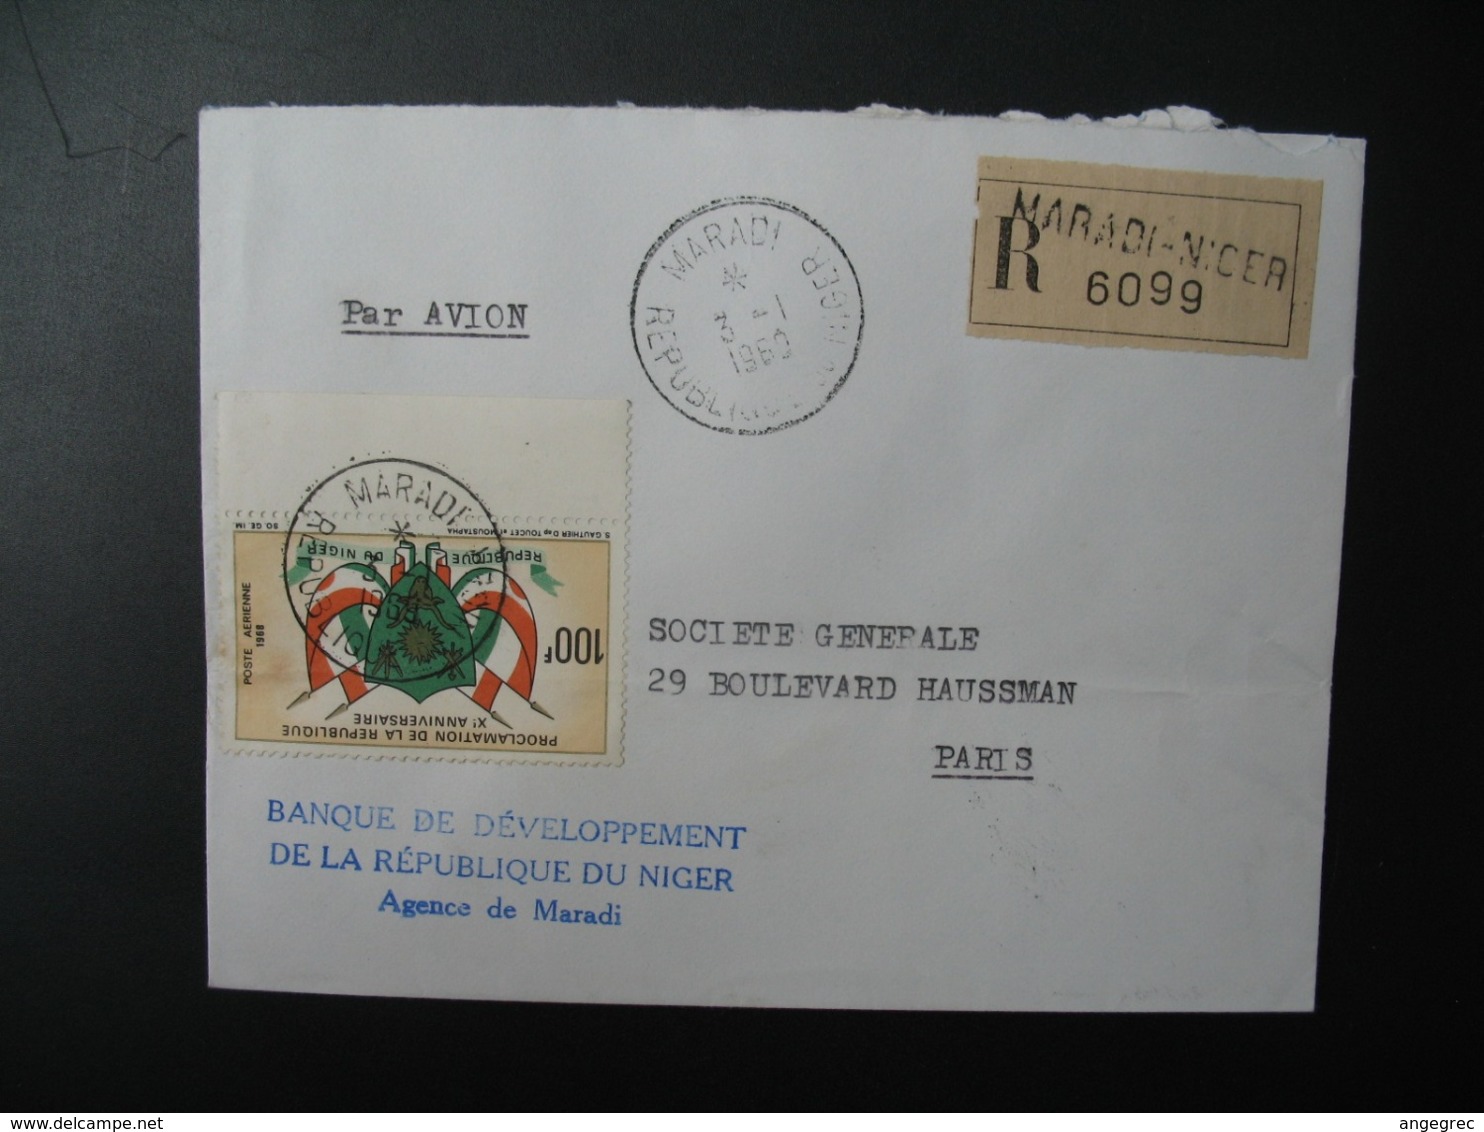 Niger   Lettre Recommandée N° 6099  - 1960  Agence Maradi   Pour La Sté Générale En France   Bd Haussmann   Paris - Niger (1960-...)